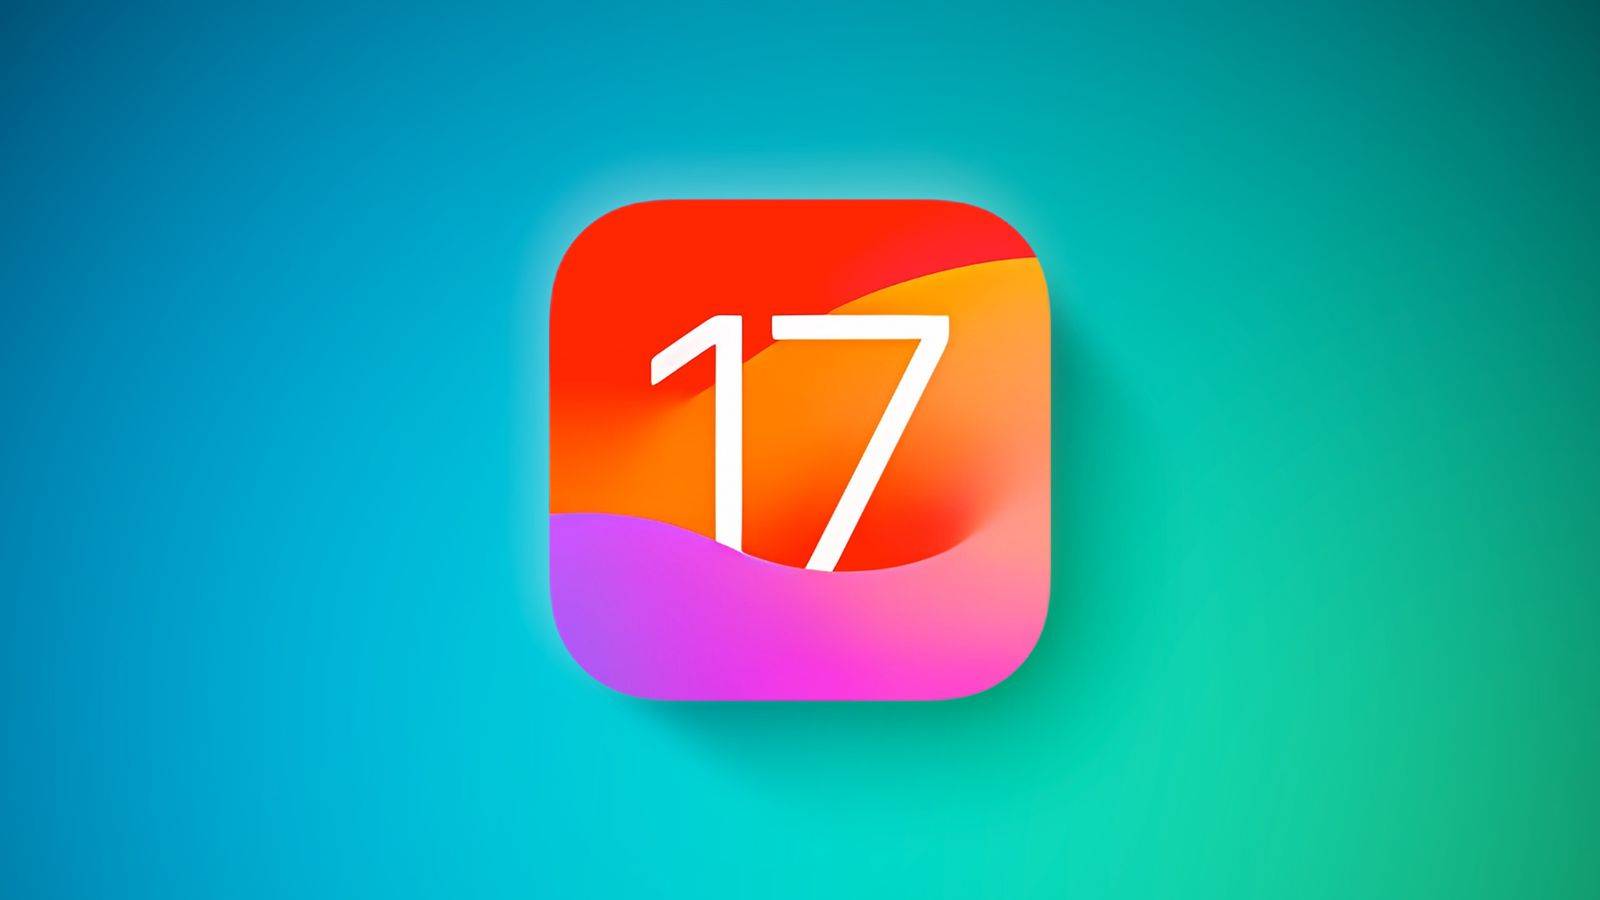 Se lanzó iOS 17.1. Aquí está la lista completa de novedades de iPhone y Android